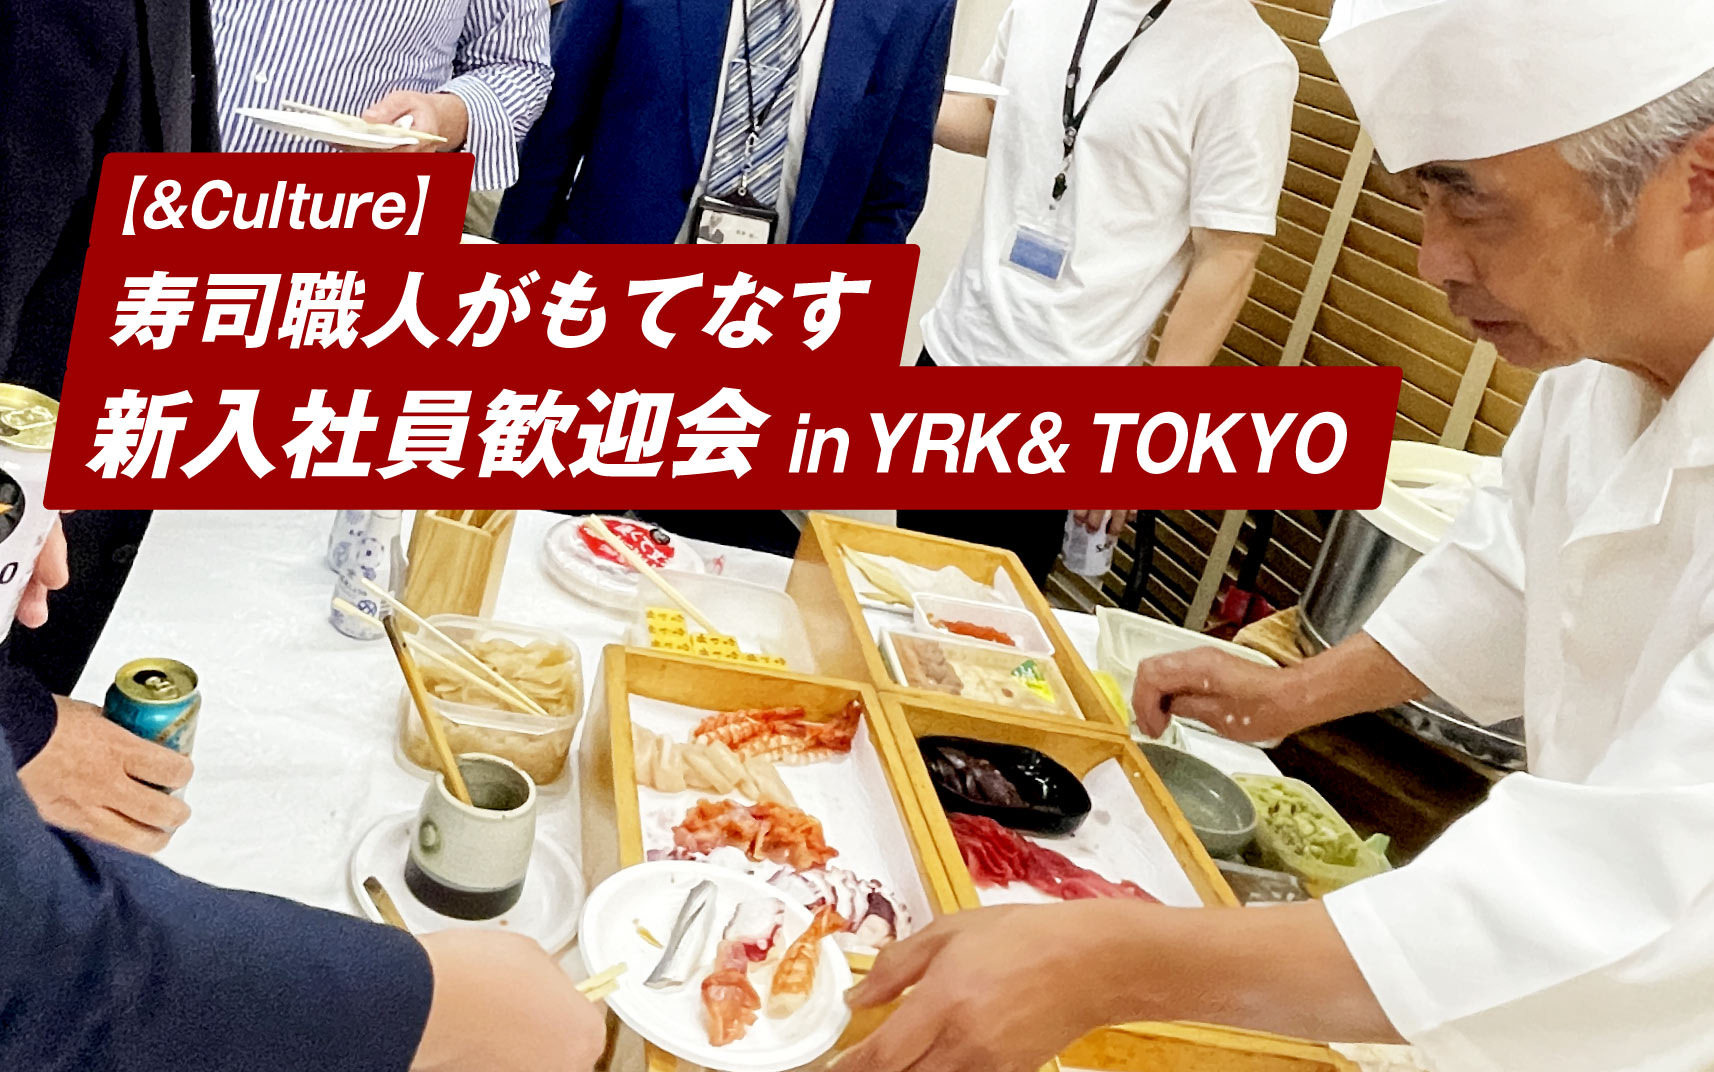 寿司職人がもてなす新入社員歓迎会_イベント会場風景YRK&TOKYO_TOPバナー